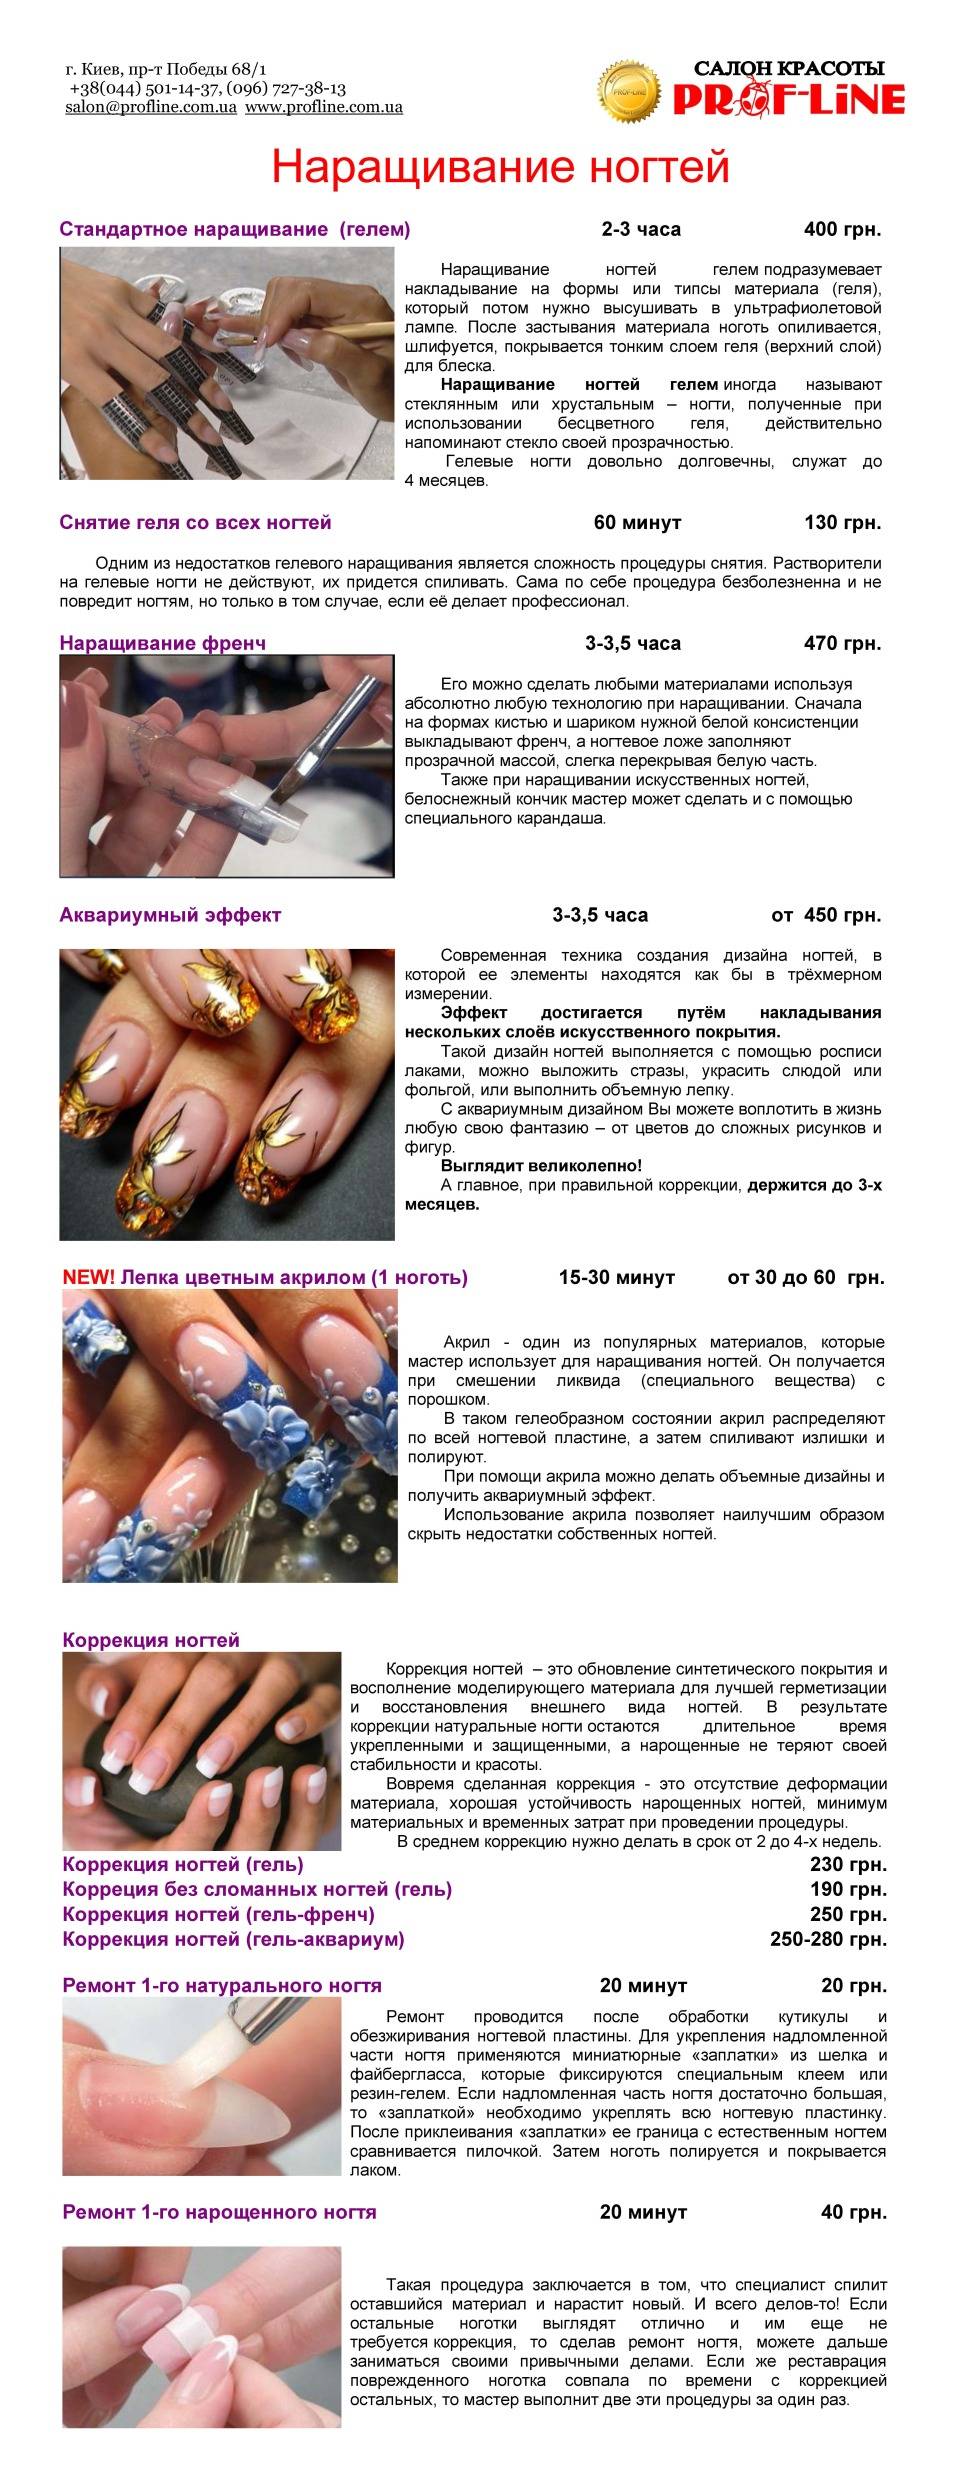 Правила наращивания. Наращивание ногтей пошагово с описанием. Технология наращивания ногтей. Гель для моделирования ногтей. Порядок коррекции нарощенных ногтей гель лаком.